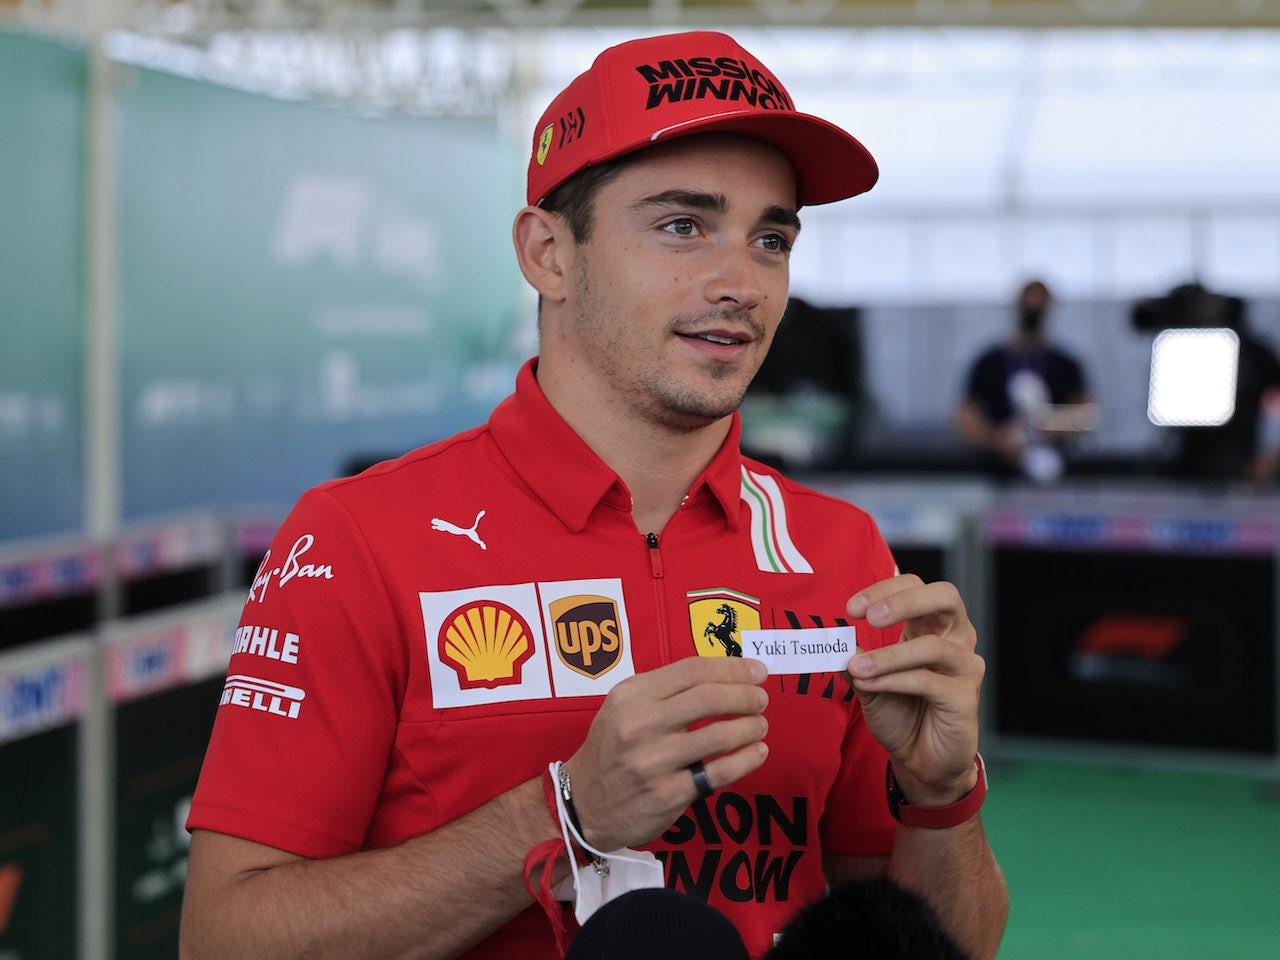 'Doubts' about Ferrari 'aerodynamics' - insider